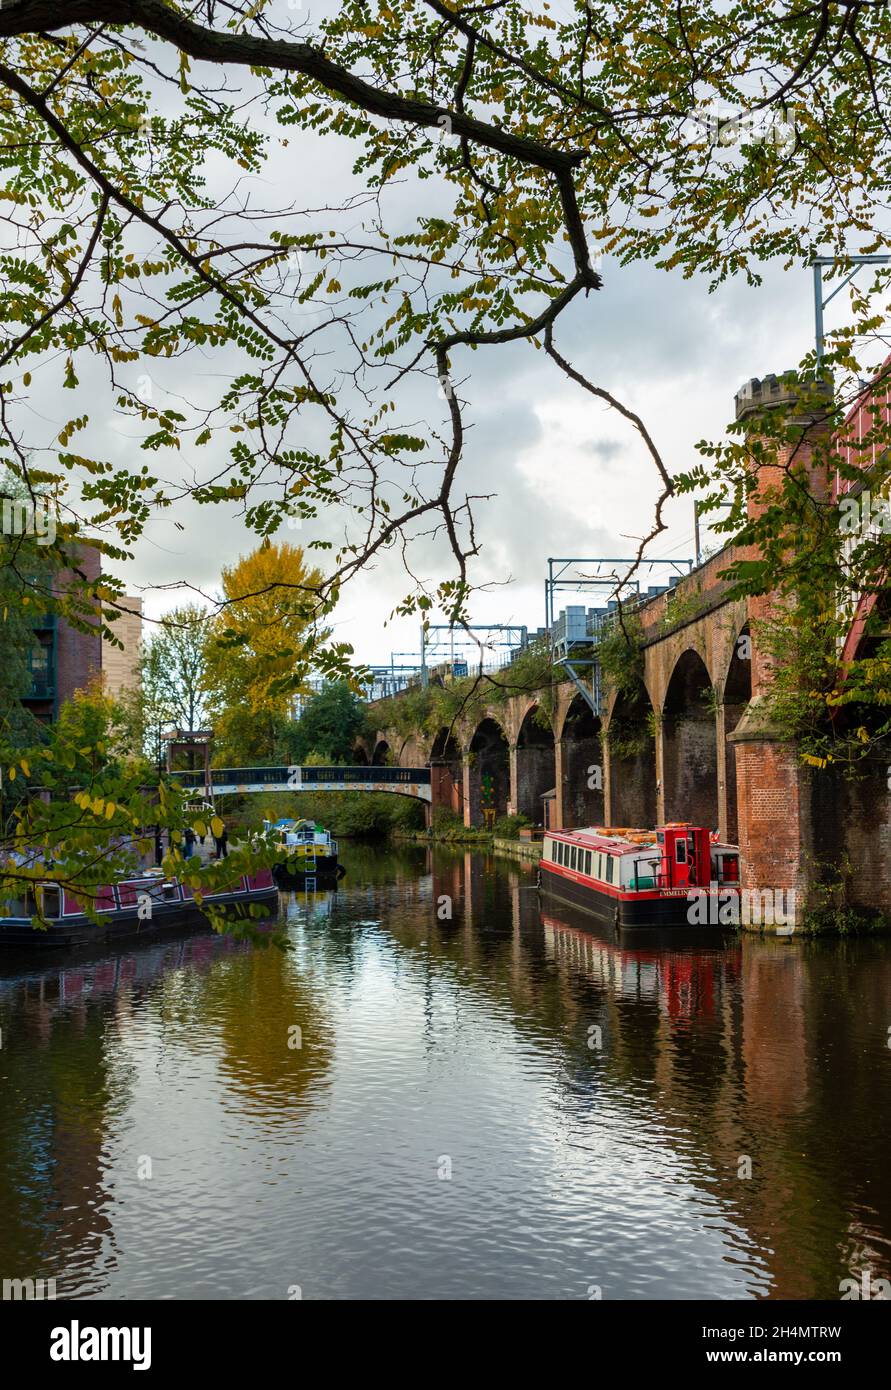 La barge Emmeline Pankhurst amarrée à côté du viaduc sur le canal Bridgewater, Castlefield, Deansgate, Manchester, Angleterre,ROYAUME-UNI Banque D'Images